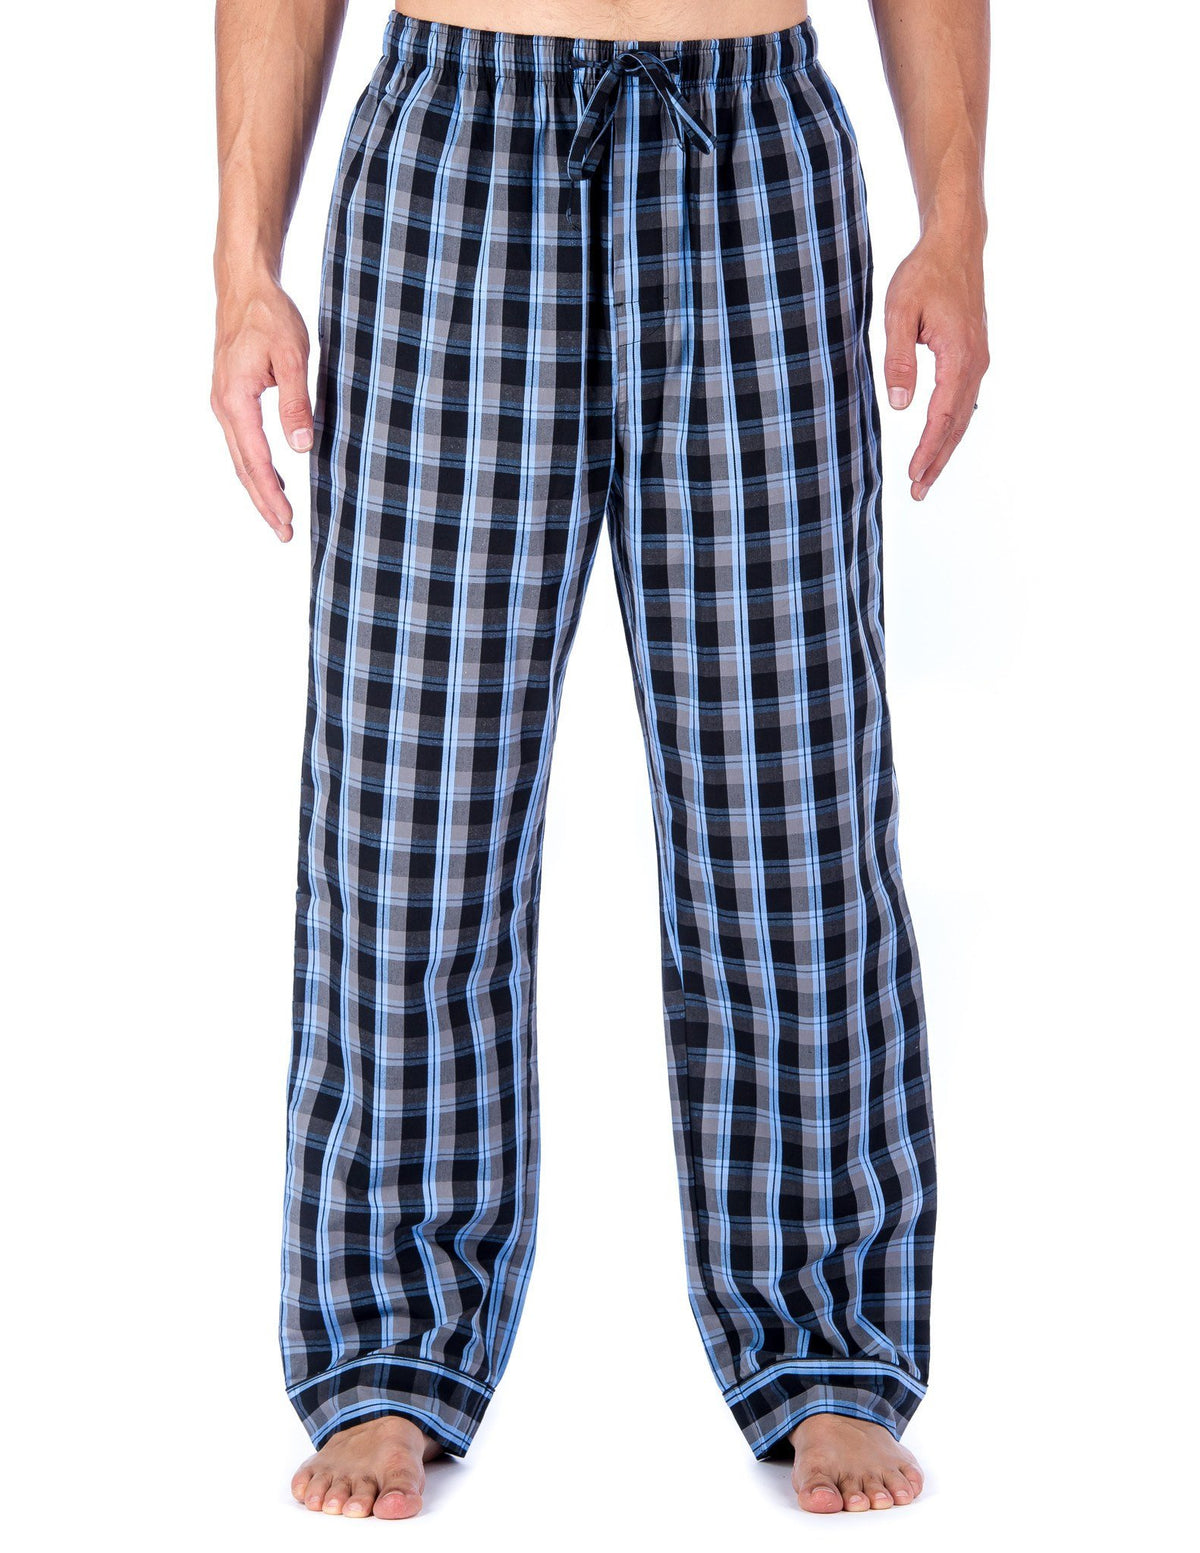 Men's 100% Cotton Comfort-Fit Sleep/Lounge Pants - Plaid Blue/Grey